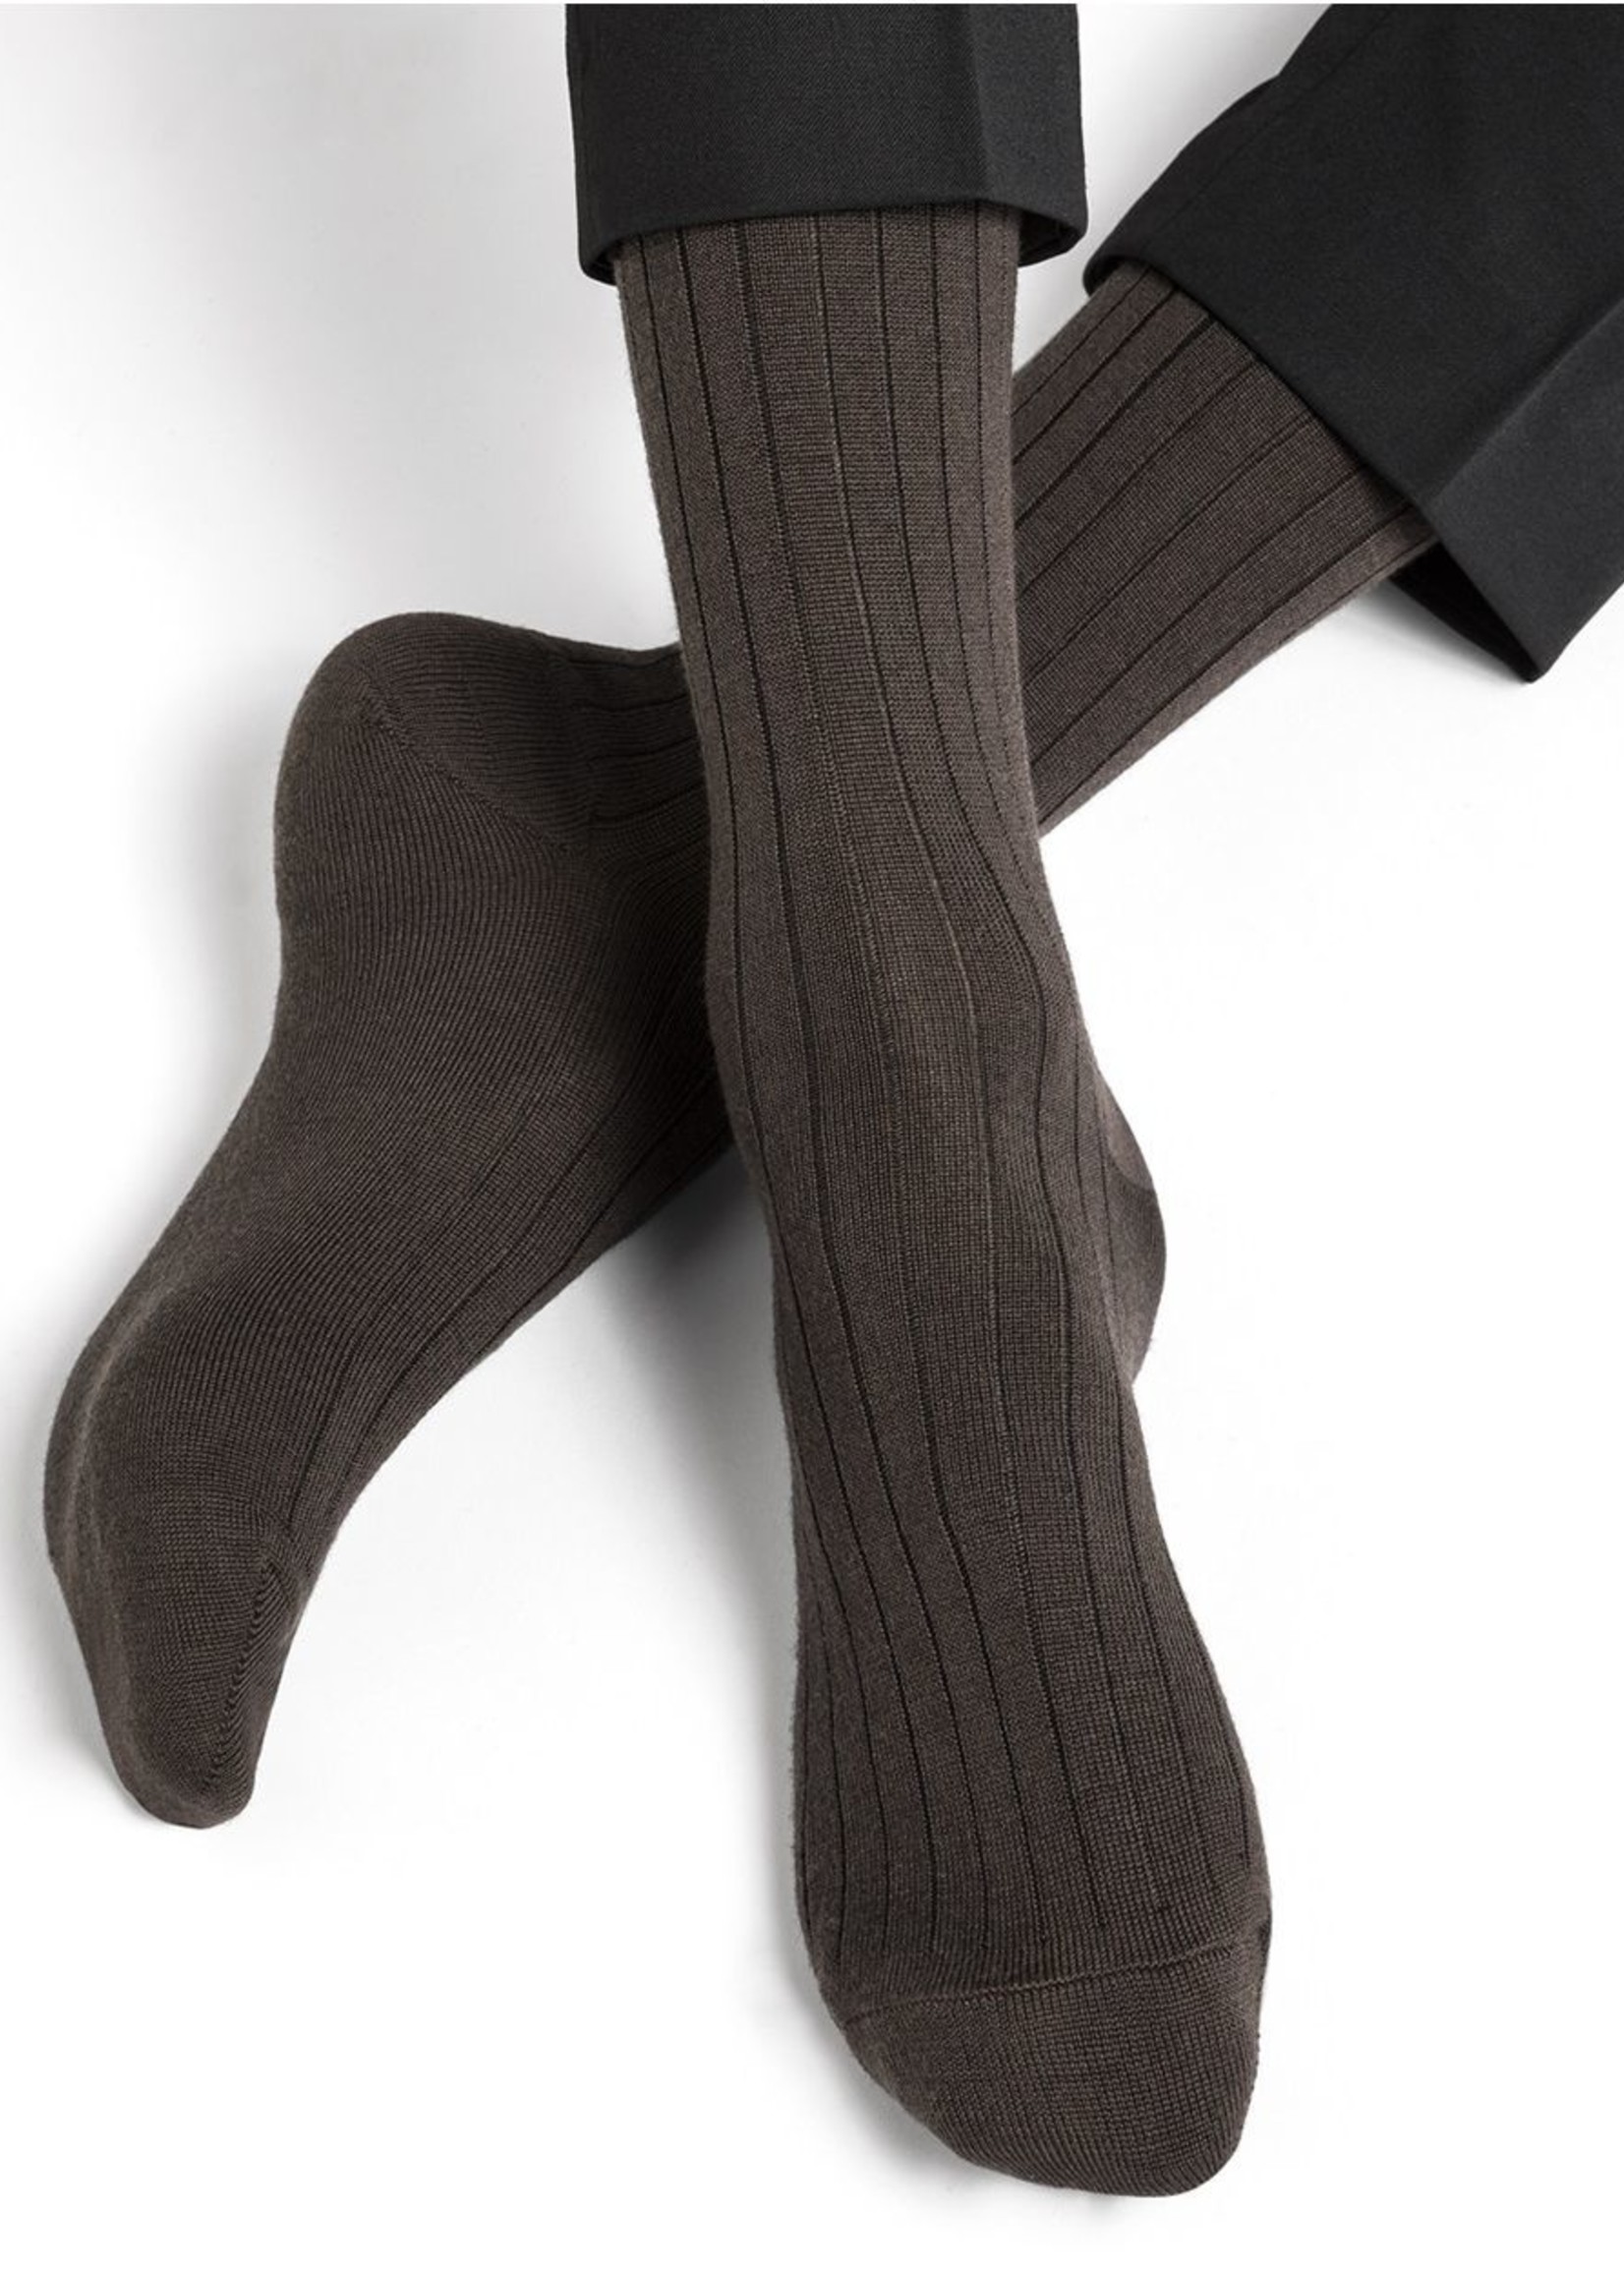 Bleuforet Men's Ribbed Merino Wool / Cotton Inside Sock